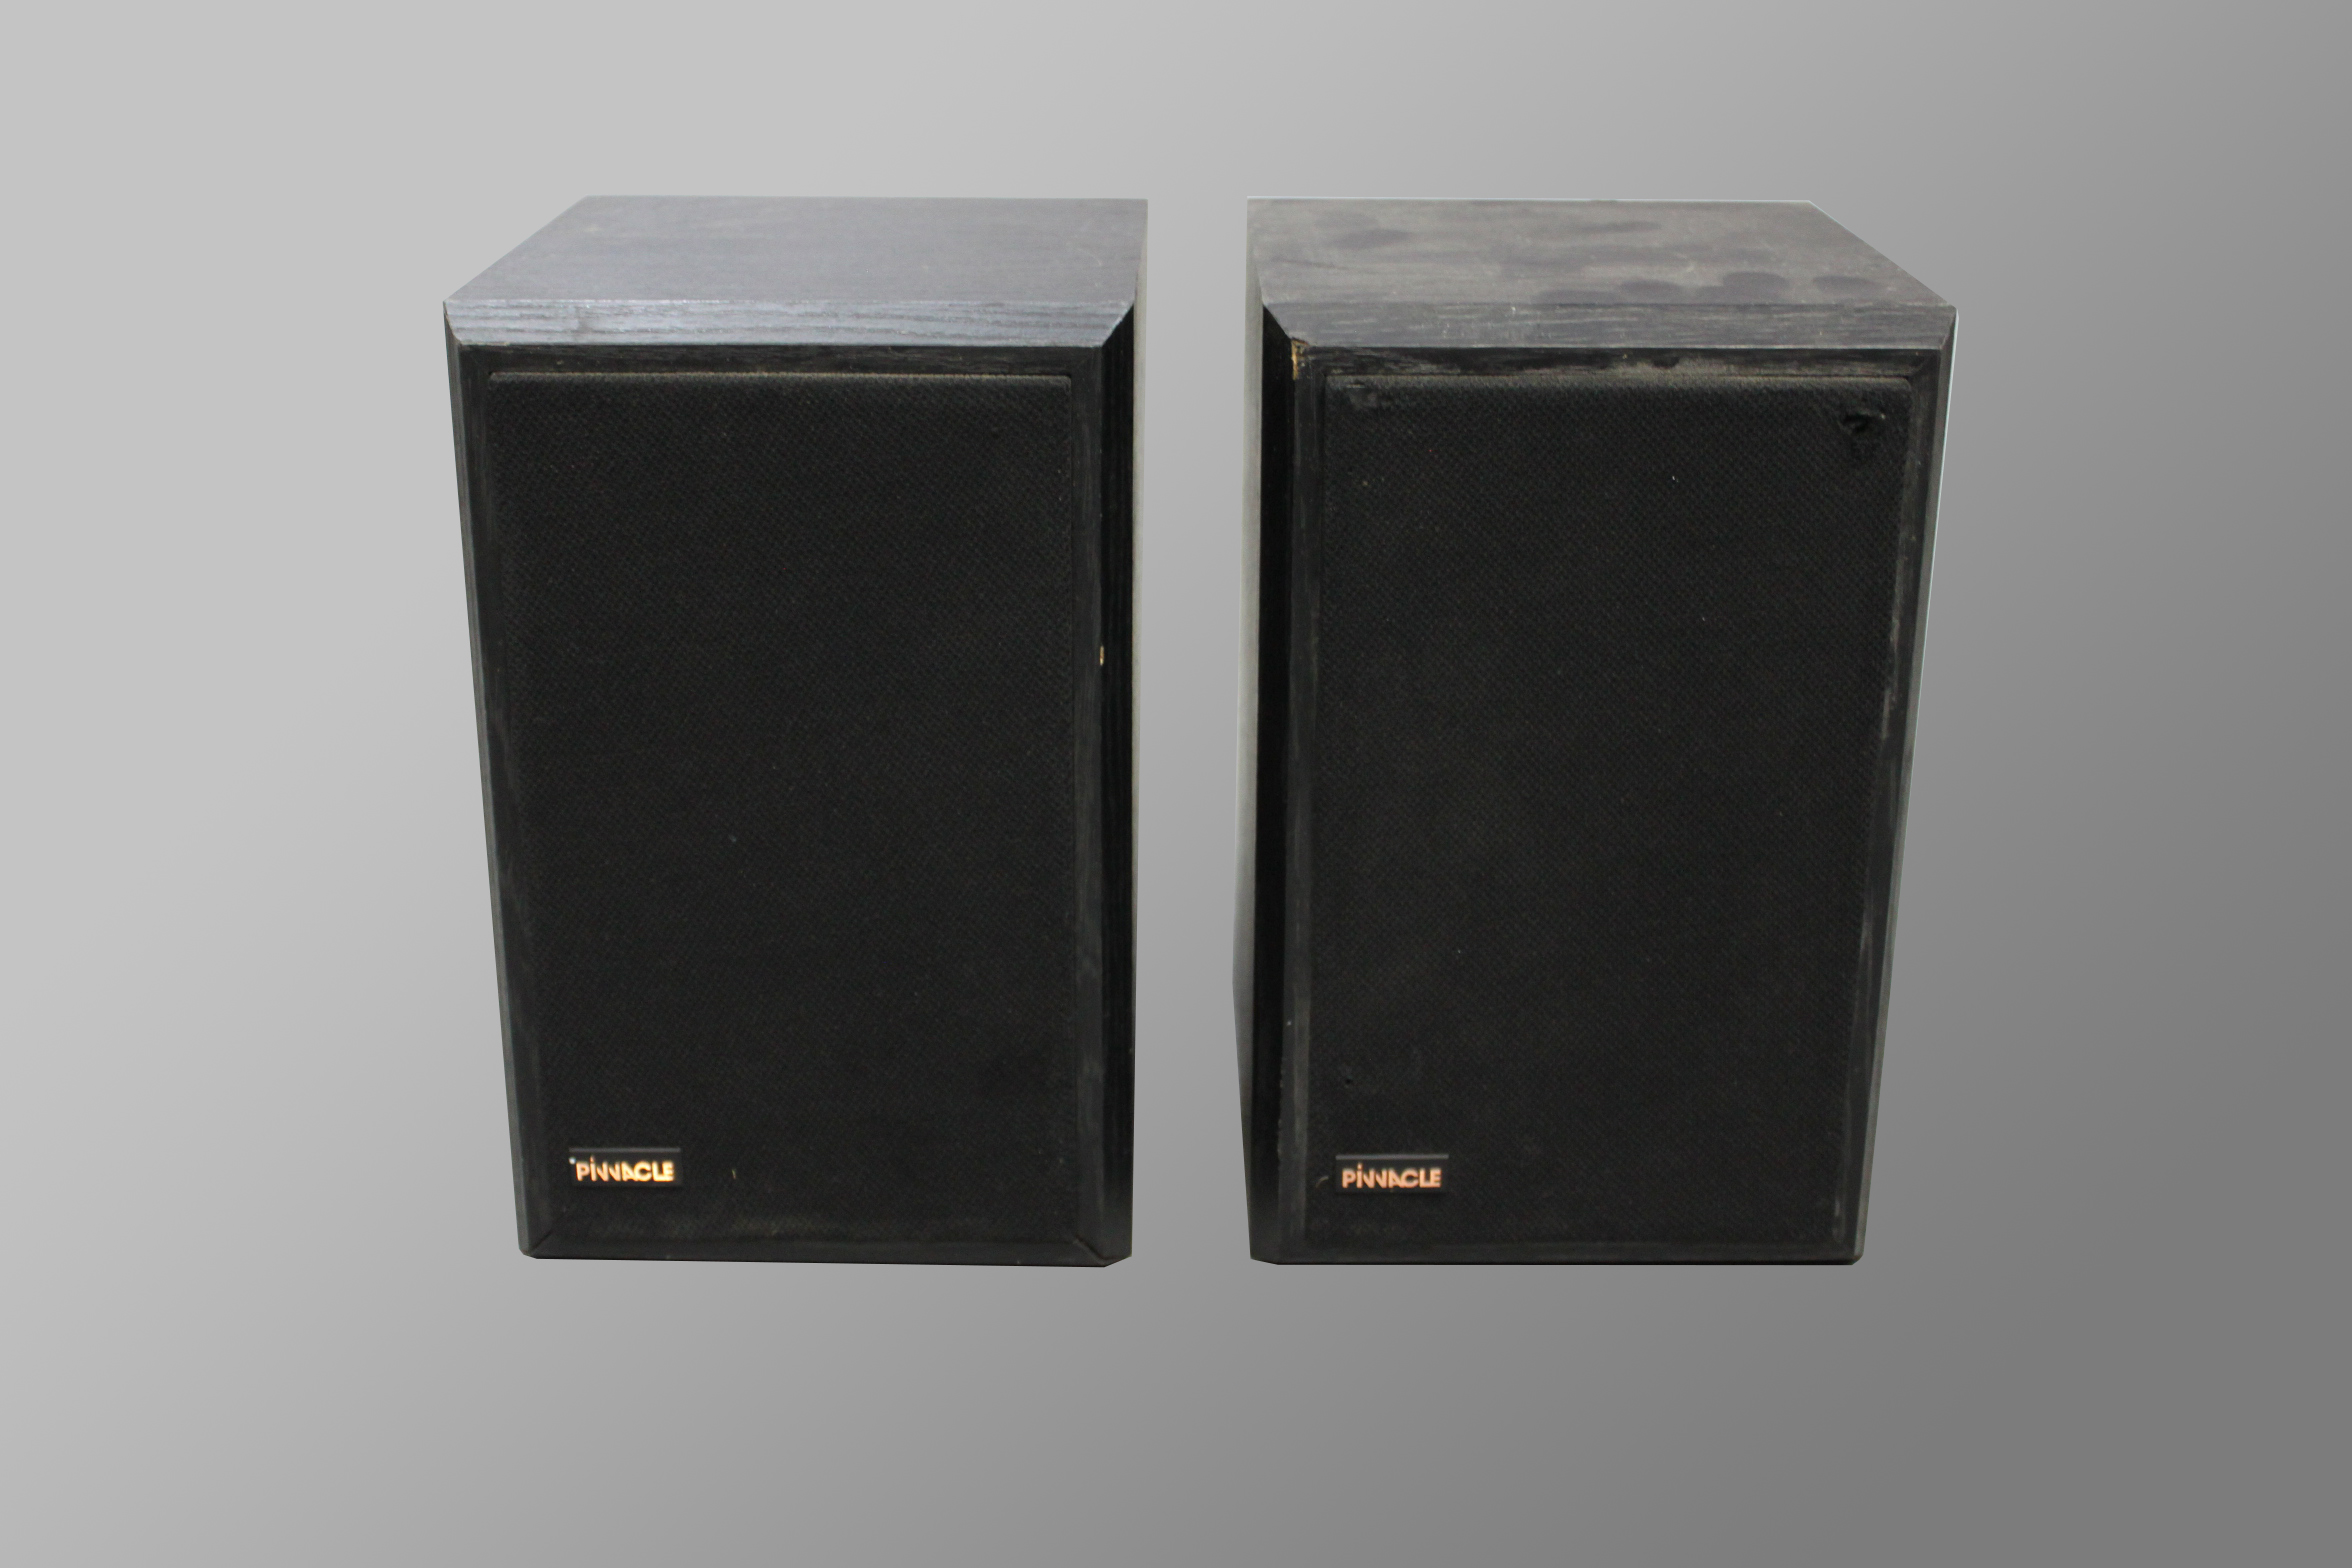 Pinnacle MRC-400 Speakers